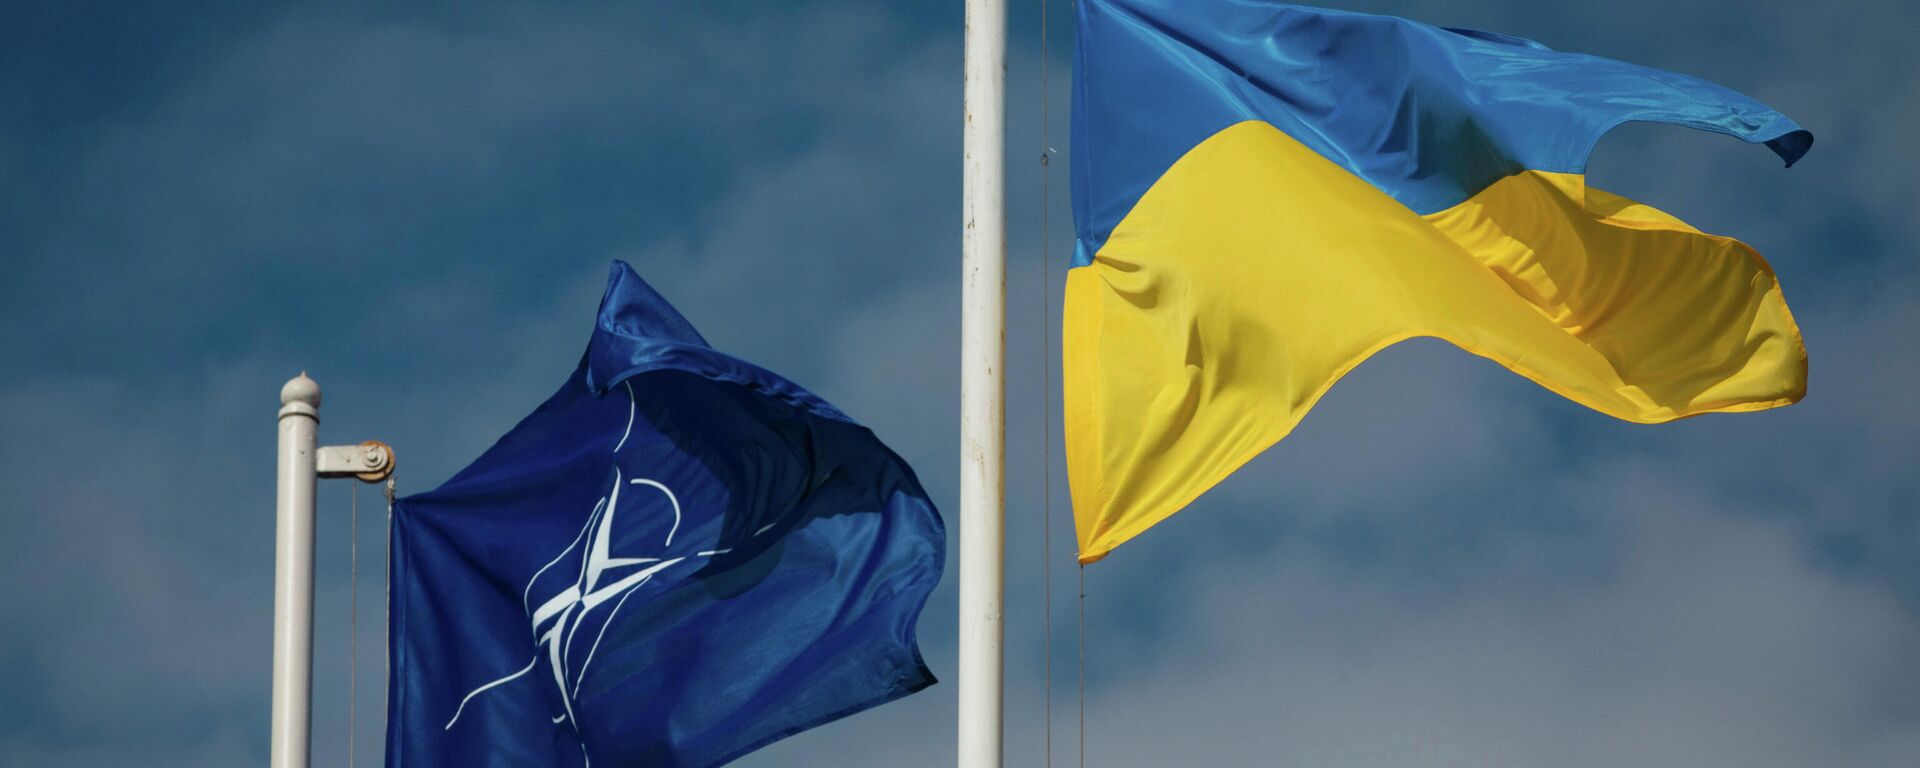 Национальный флаг Украины и флаг Организации Североатлантического договора (НАТО) - Sputnik Латвия, 1920, 07.09.2021